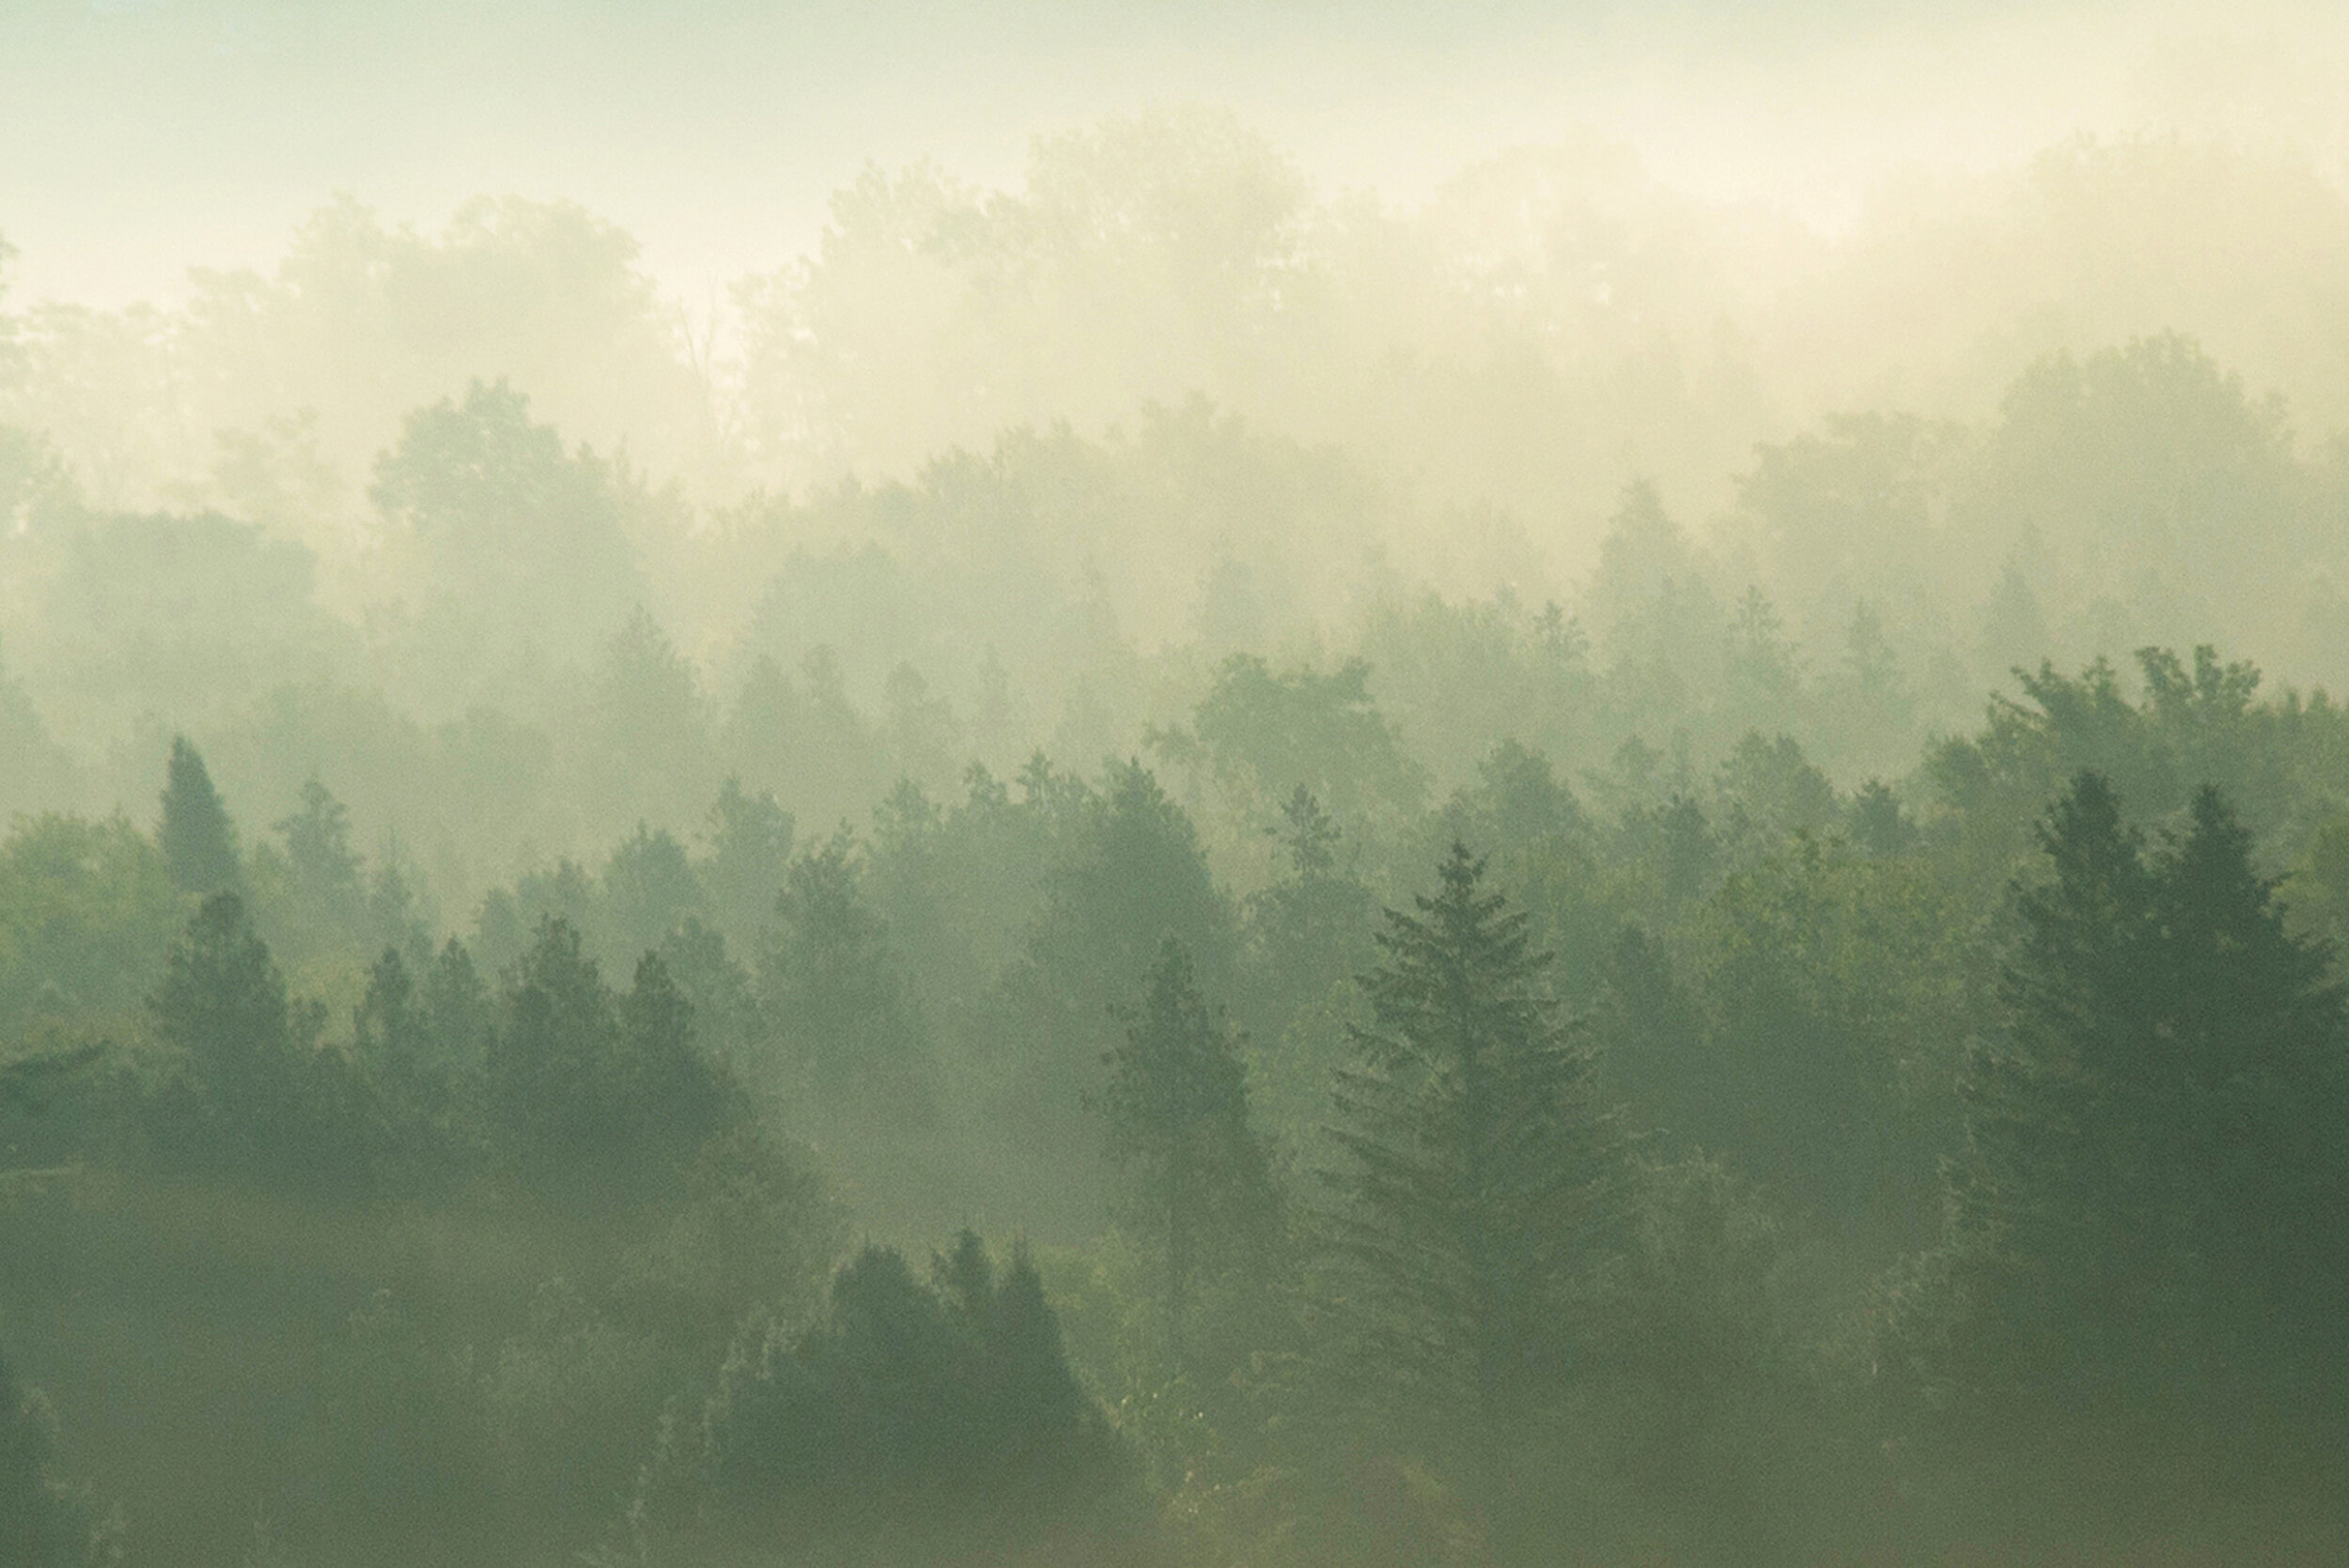   Morning Fog, Peacham, VT  